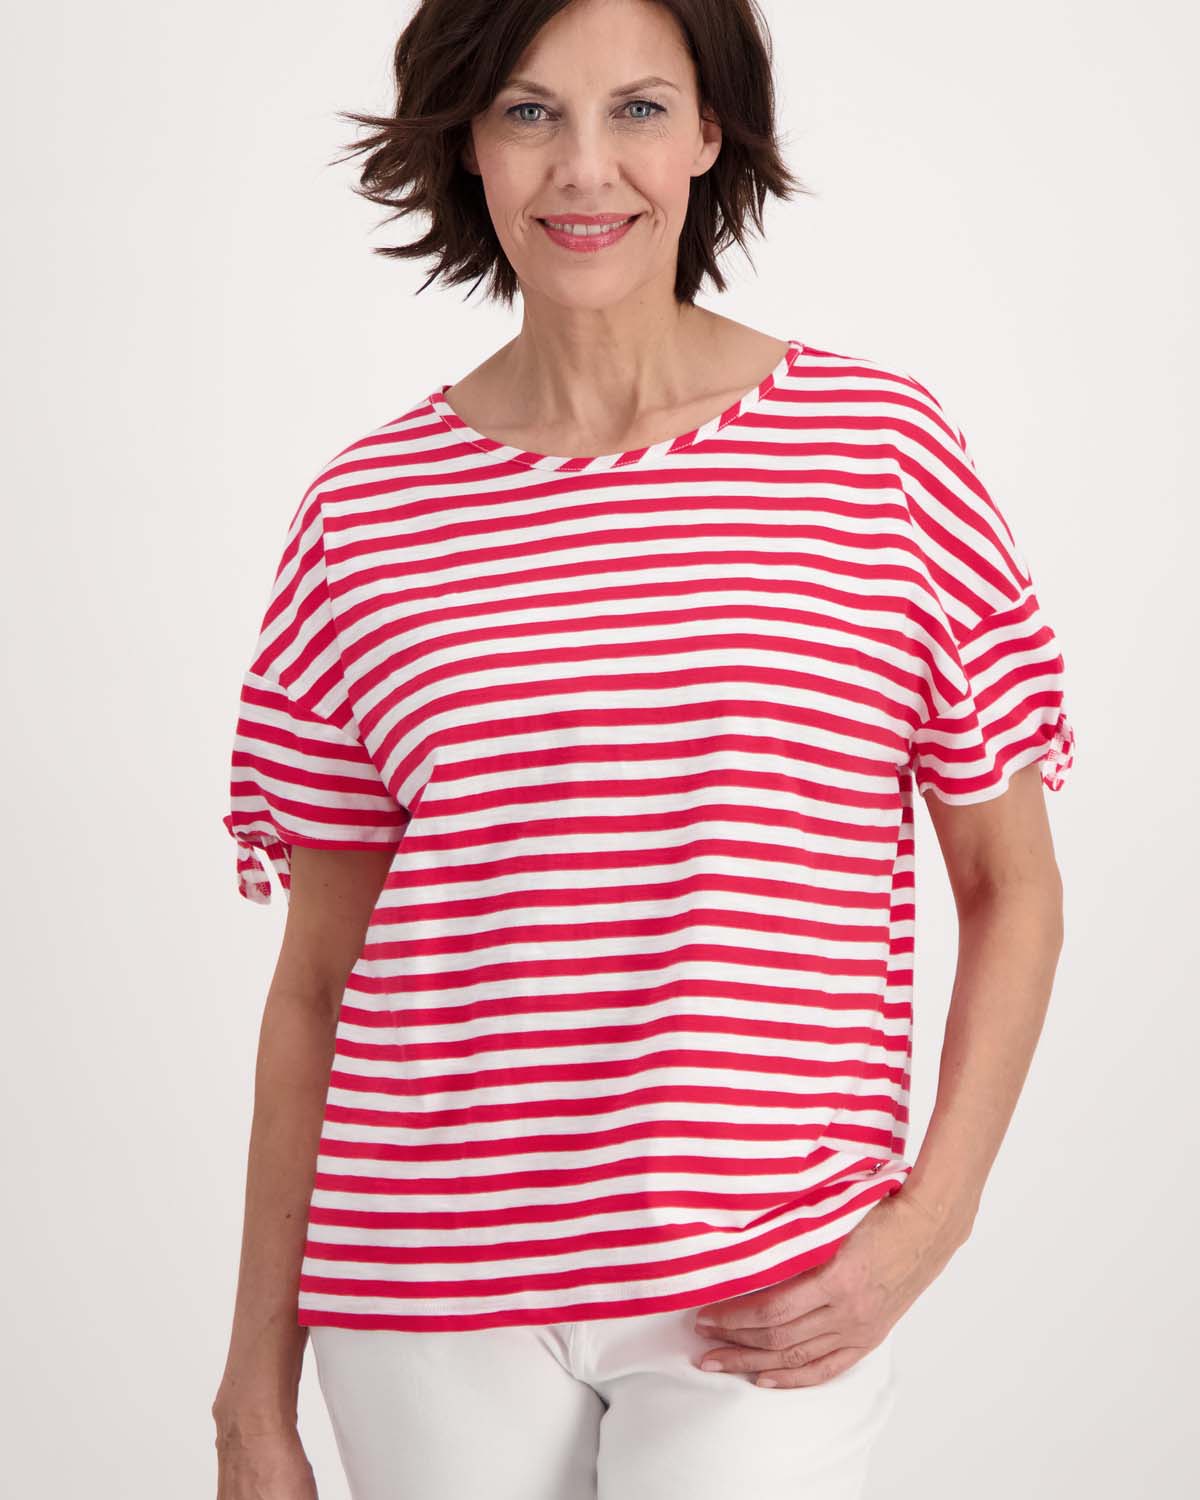 Monari Striped T-Shirt - Red/White